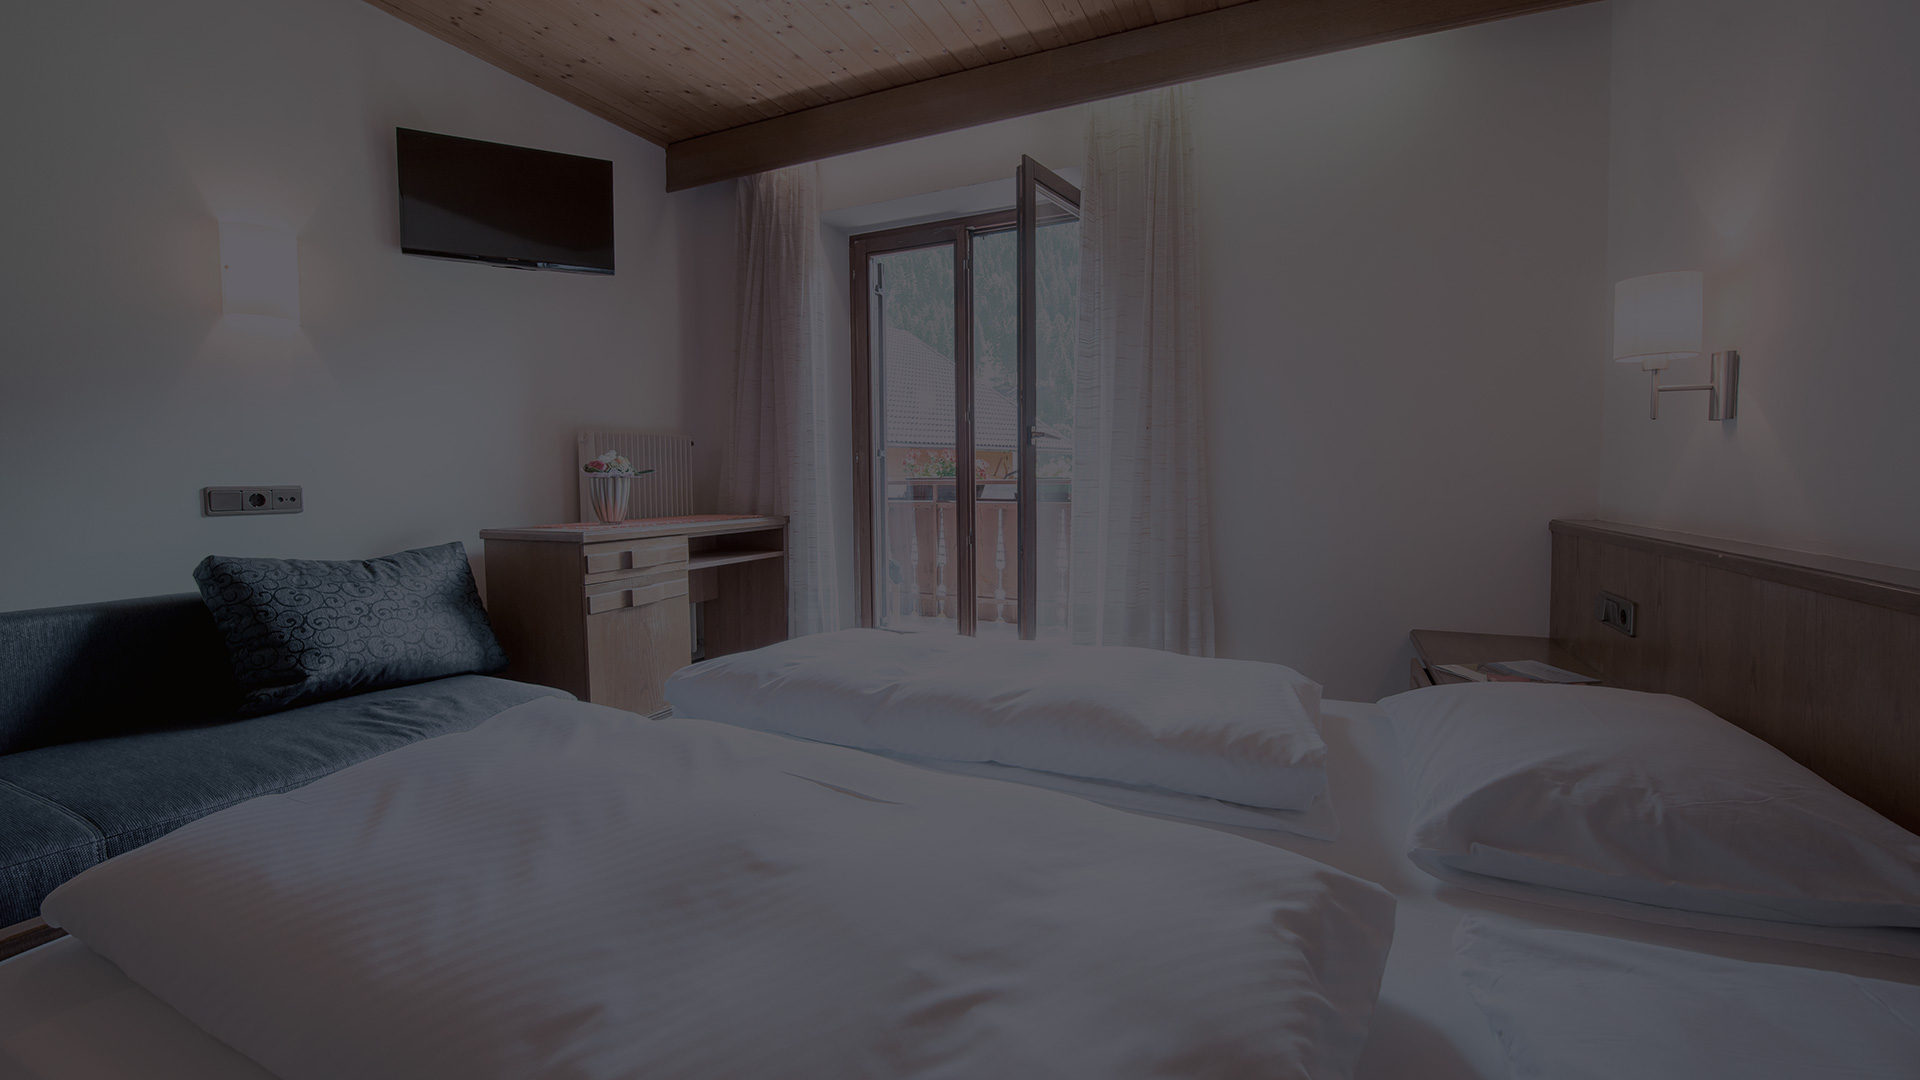 Prenotare una camera nell'albergo Rabenstein nella Val Sarentino, Alto Adige